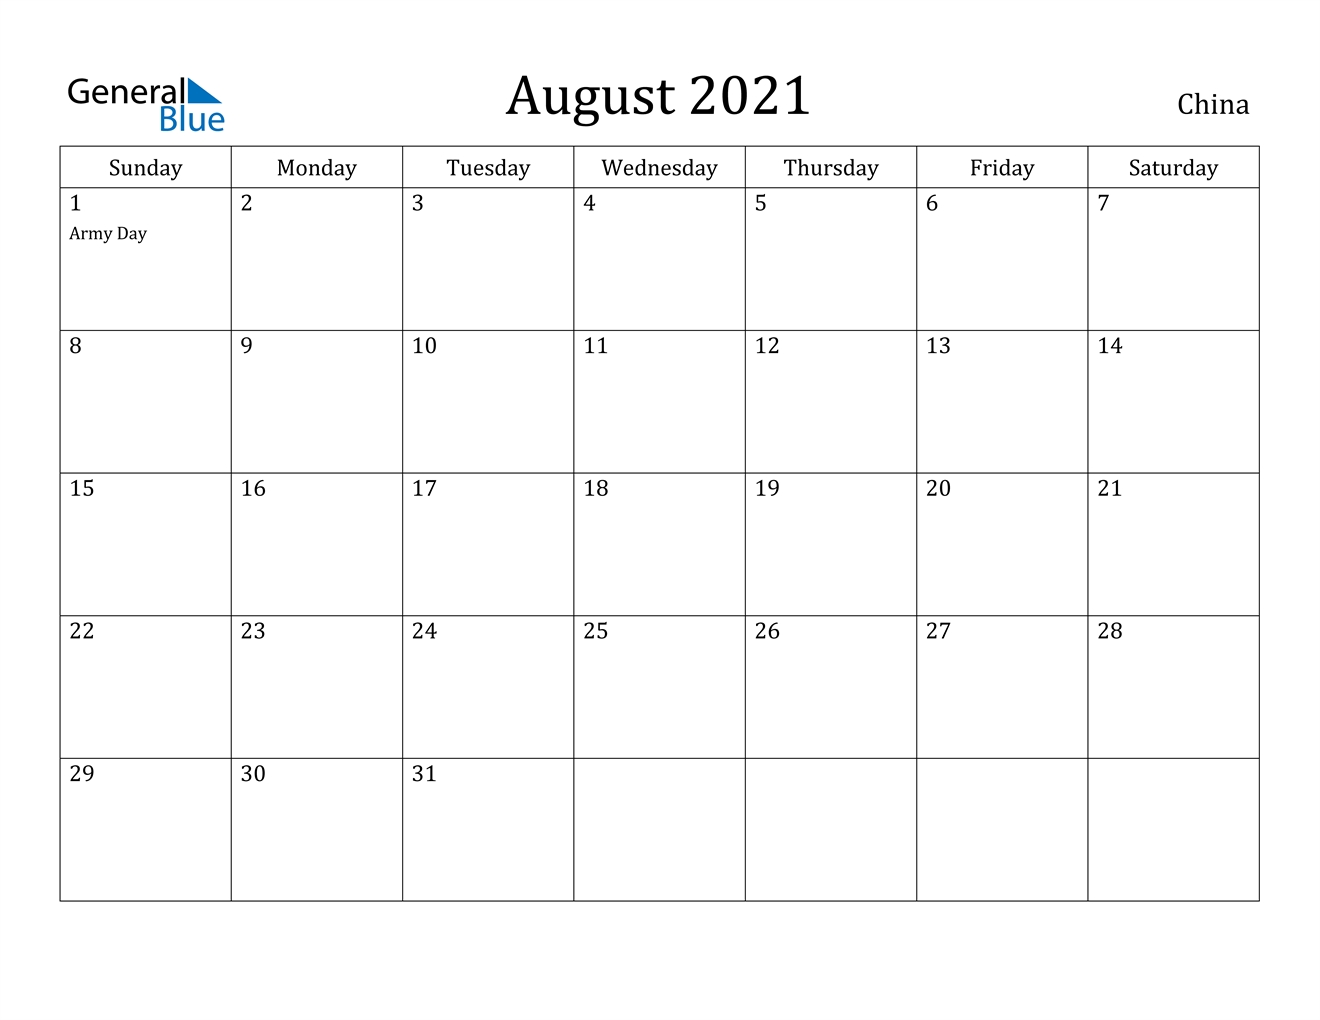 August 2021 Calendar - China August 2021 Calendar Events